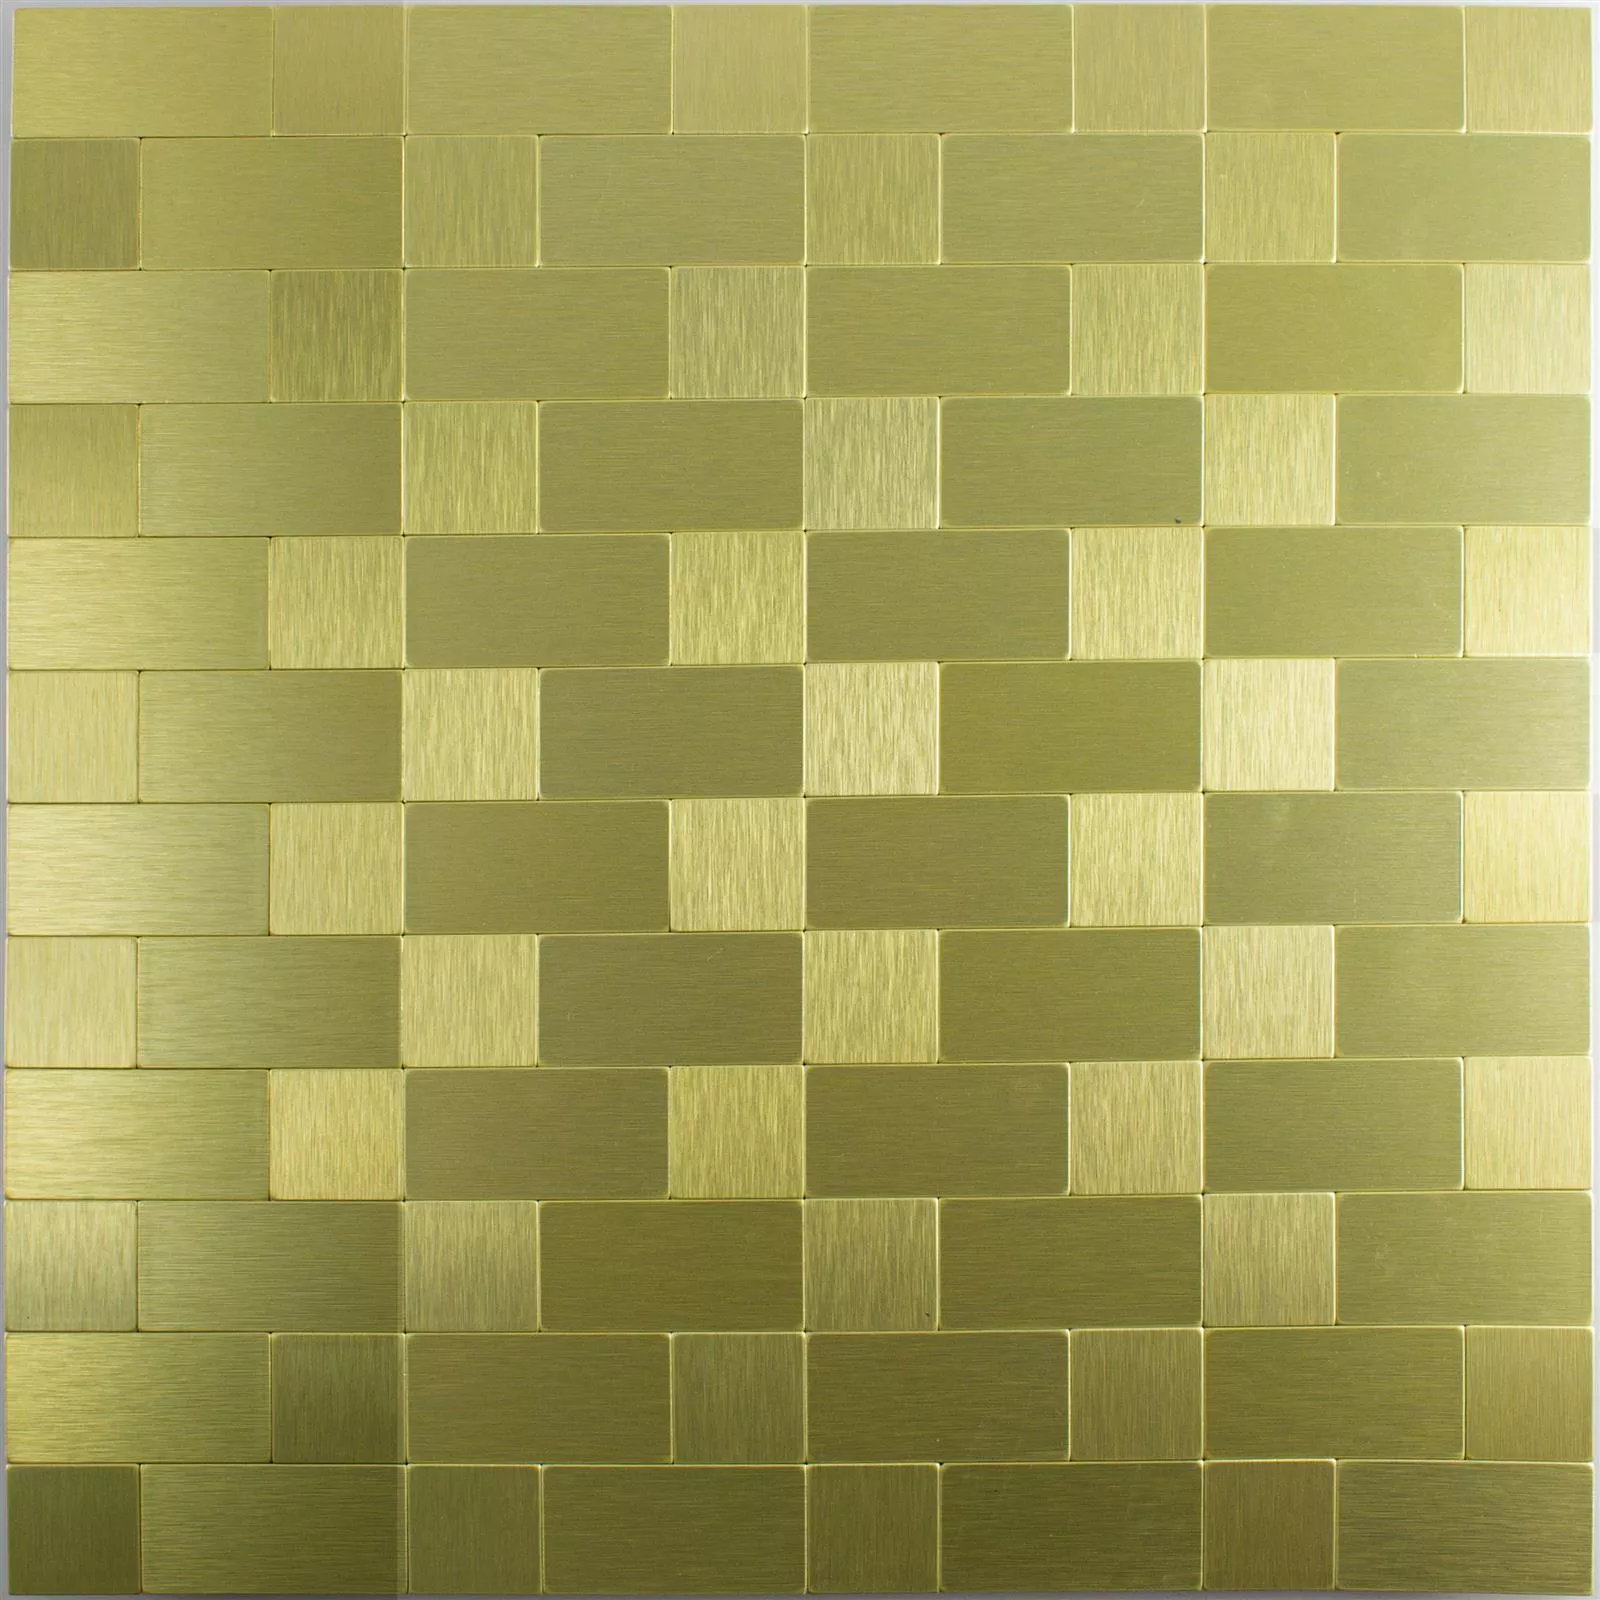 Padrão de Azulejo Mosaico Metal Autoadesivo Vryburg Ouro Combi